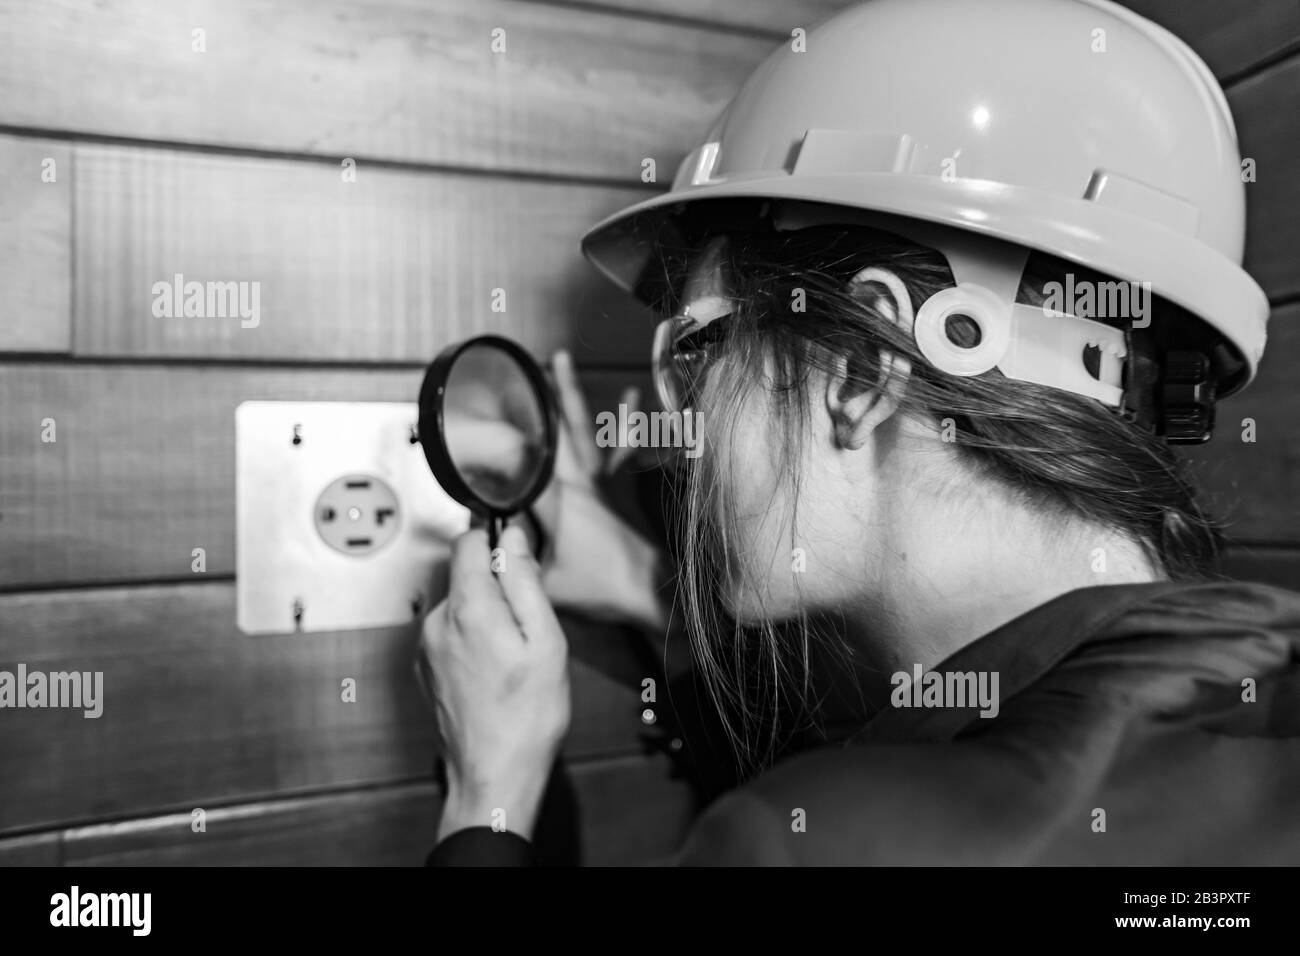 fuoco selettivo sulla mano della donna dell'ispettore di costruzione che tiene una lente d'ingrandimento per osservare da vicino la presa di elettricità di 220v per asciugatore di vestiti Foto Stock